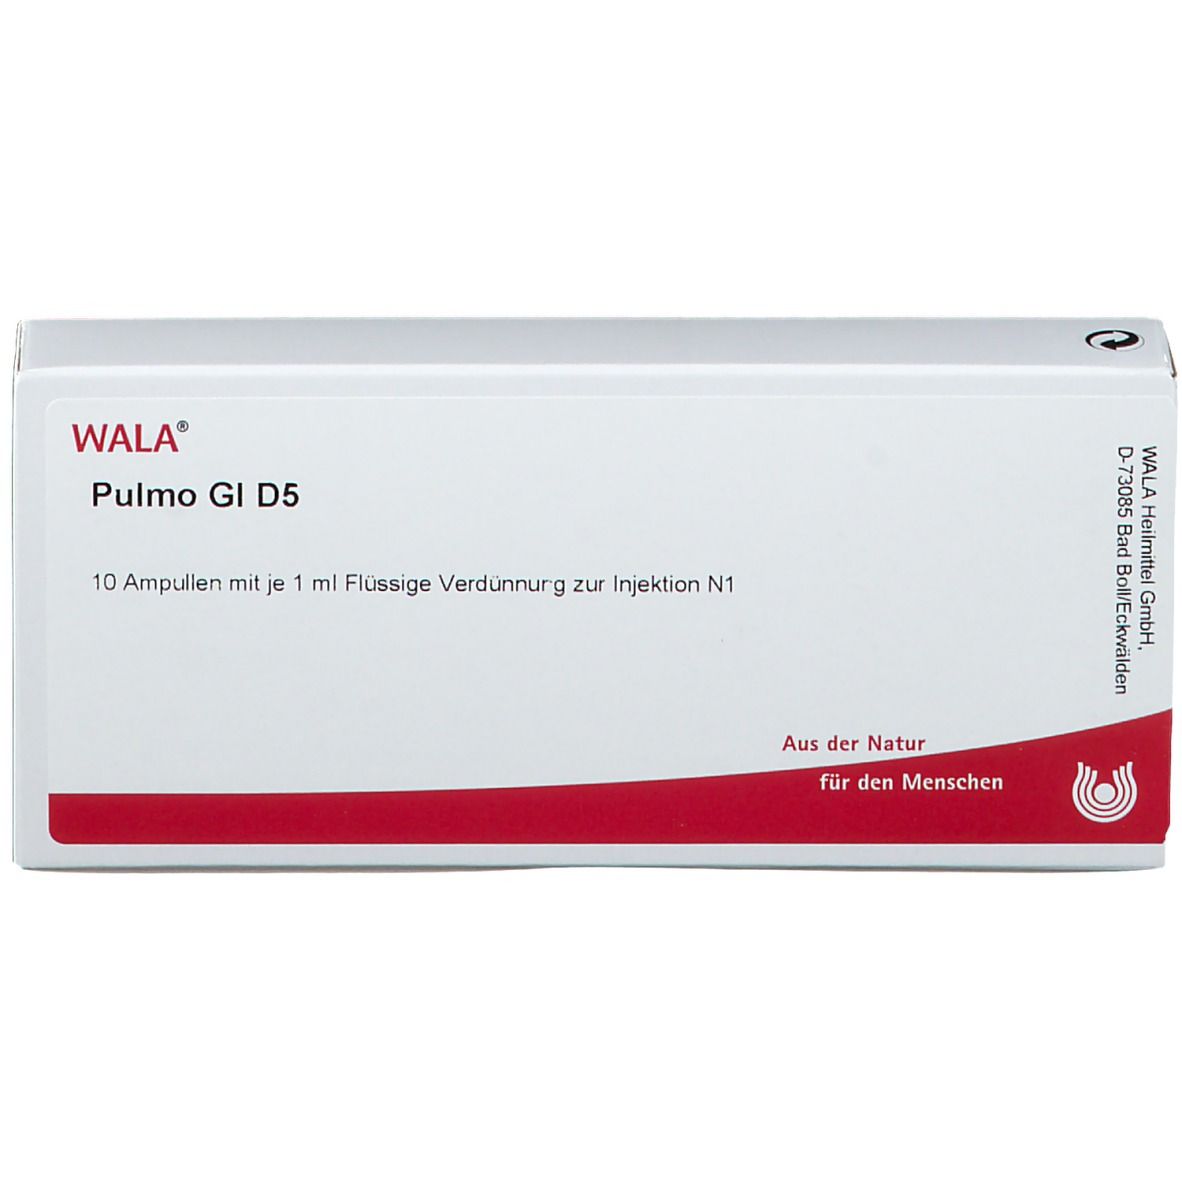 WALA® Pulmo Gl D 5